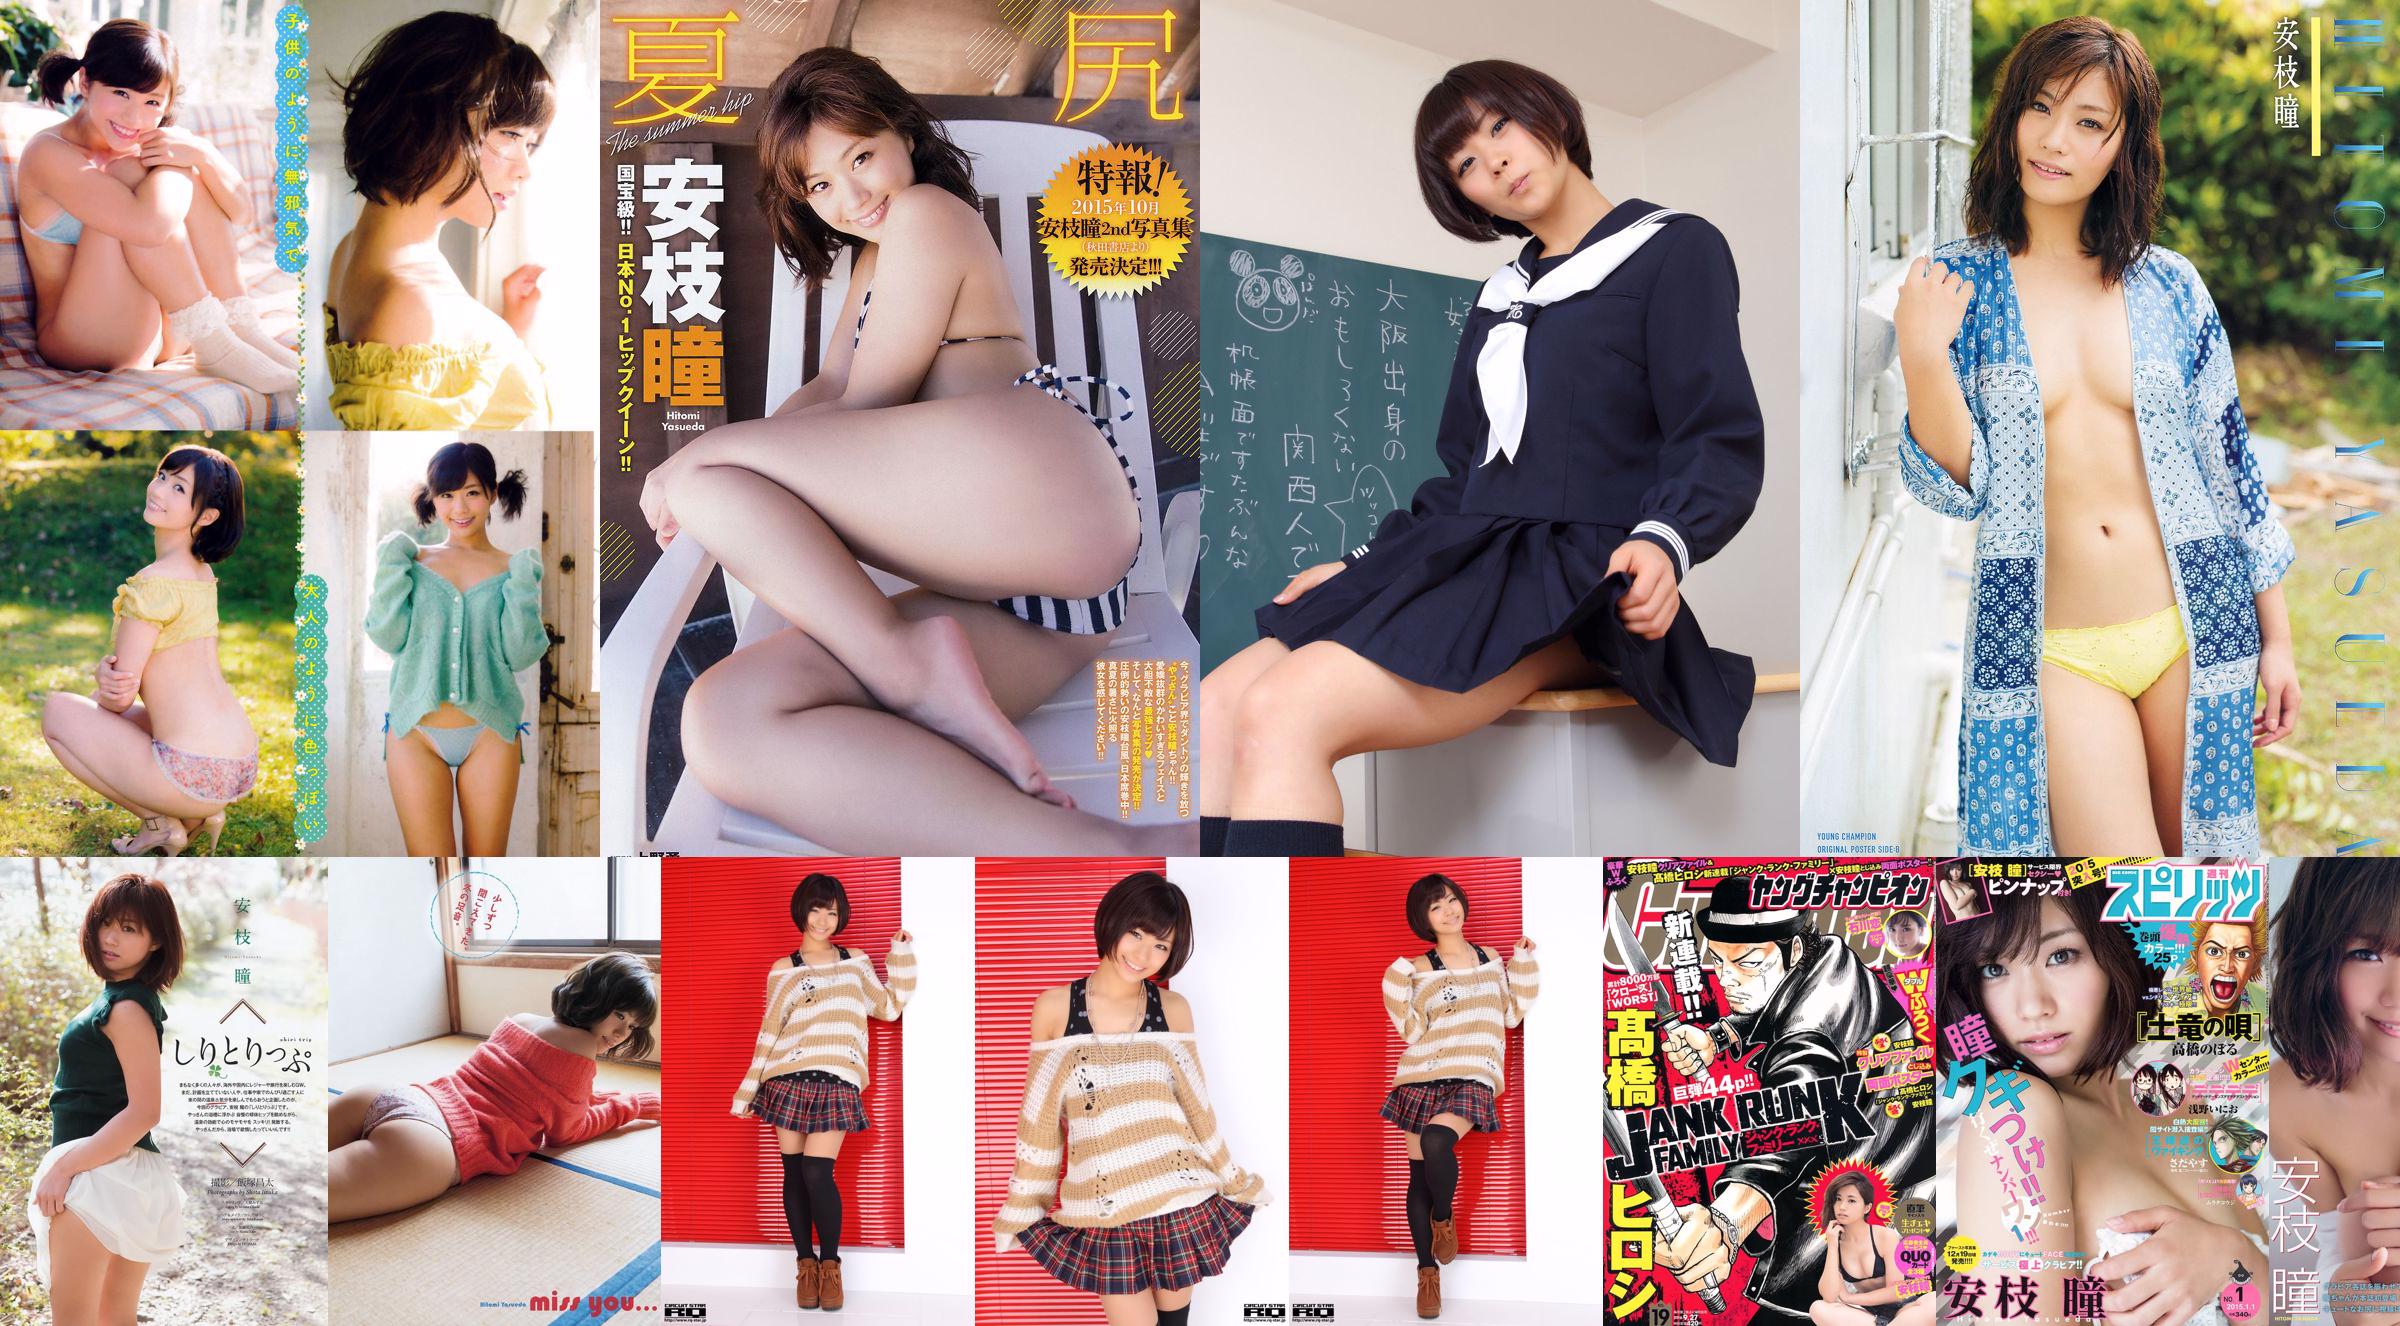 [Joven Campeón] Aji Hitomi Miwa Haruka 2014 No.23 Photo Magazine No.496530 Página 1